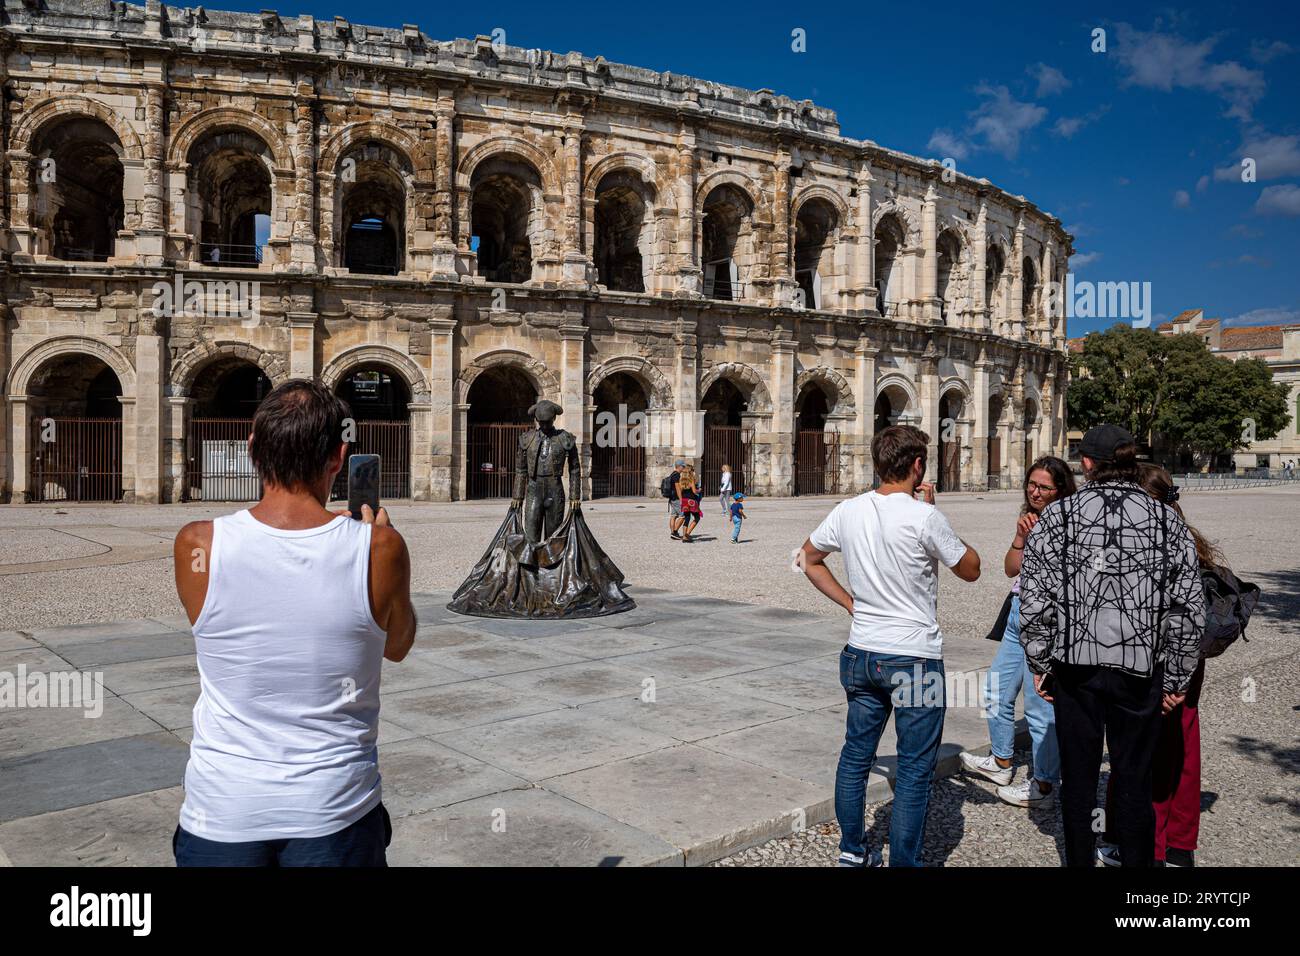 Arènes de Nîmes - römische Arena in Nimes Frankreich. Nimes Ampitheatre. Die Nimes Arena wurde um 100 n. Chr. erbaut. Eines der am besten erhaltenen römischen Ampitheater. Stockfoto